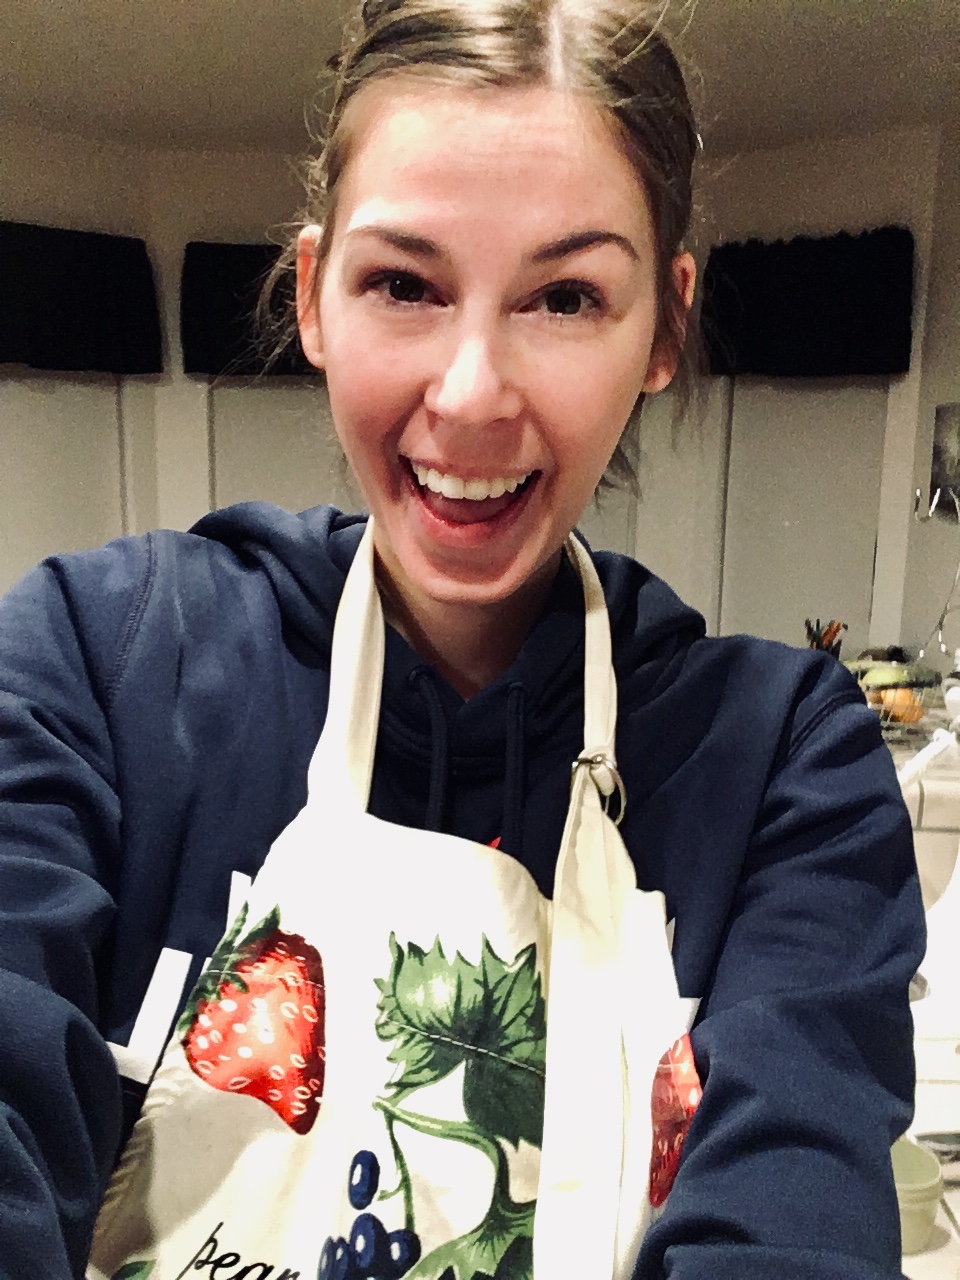 Jenna smiling wide wearing baking apron in kitchen